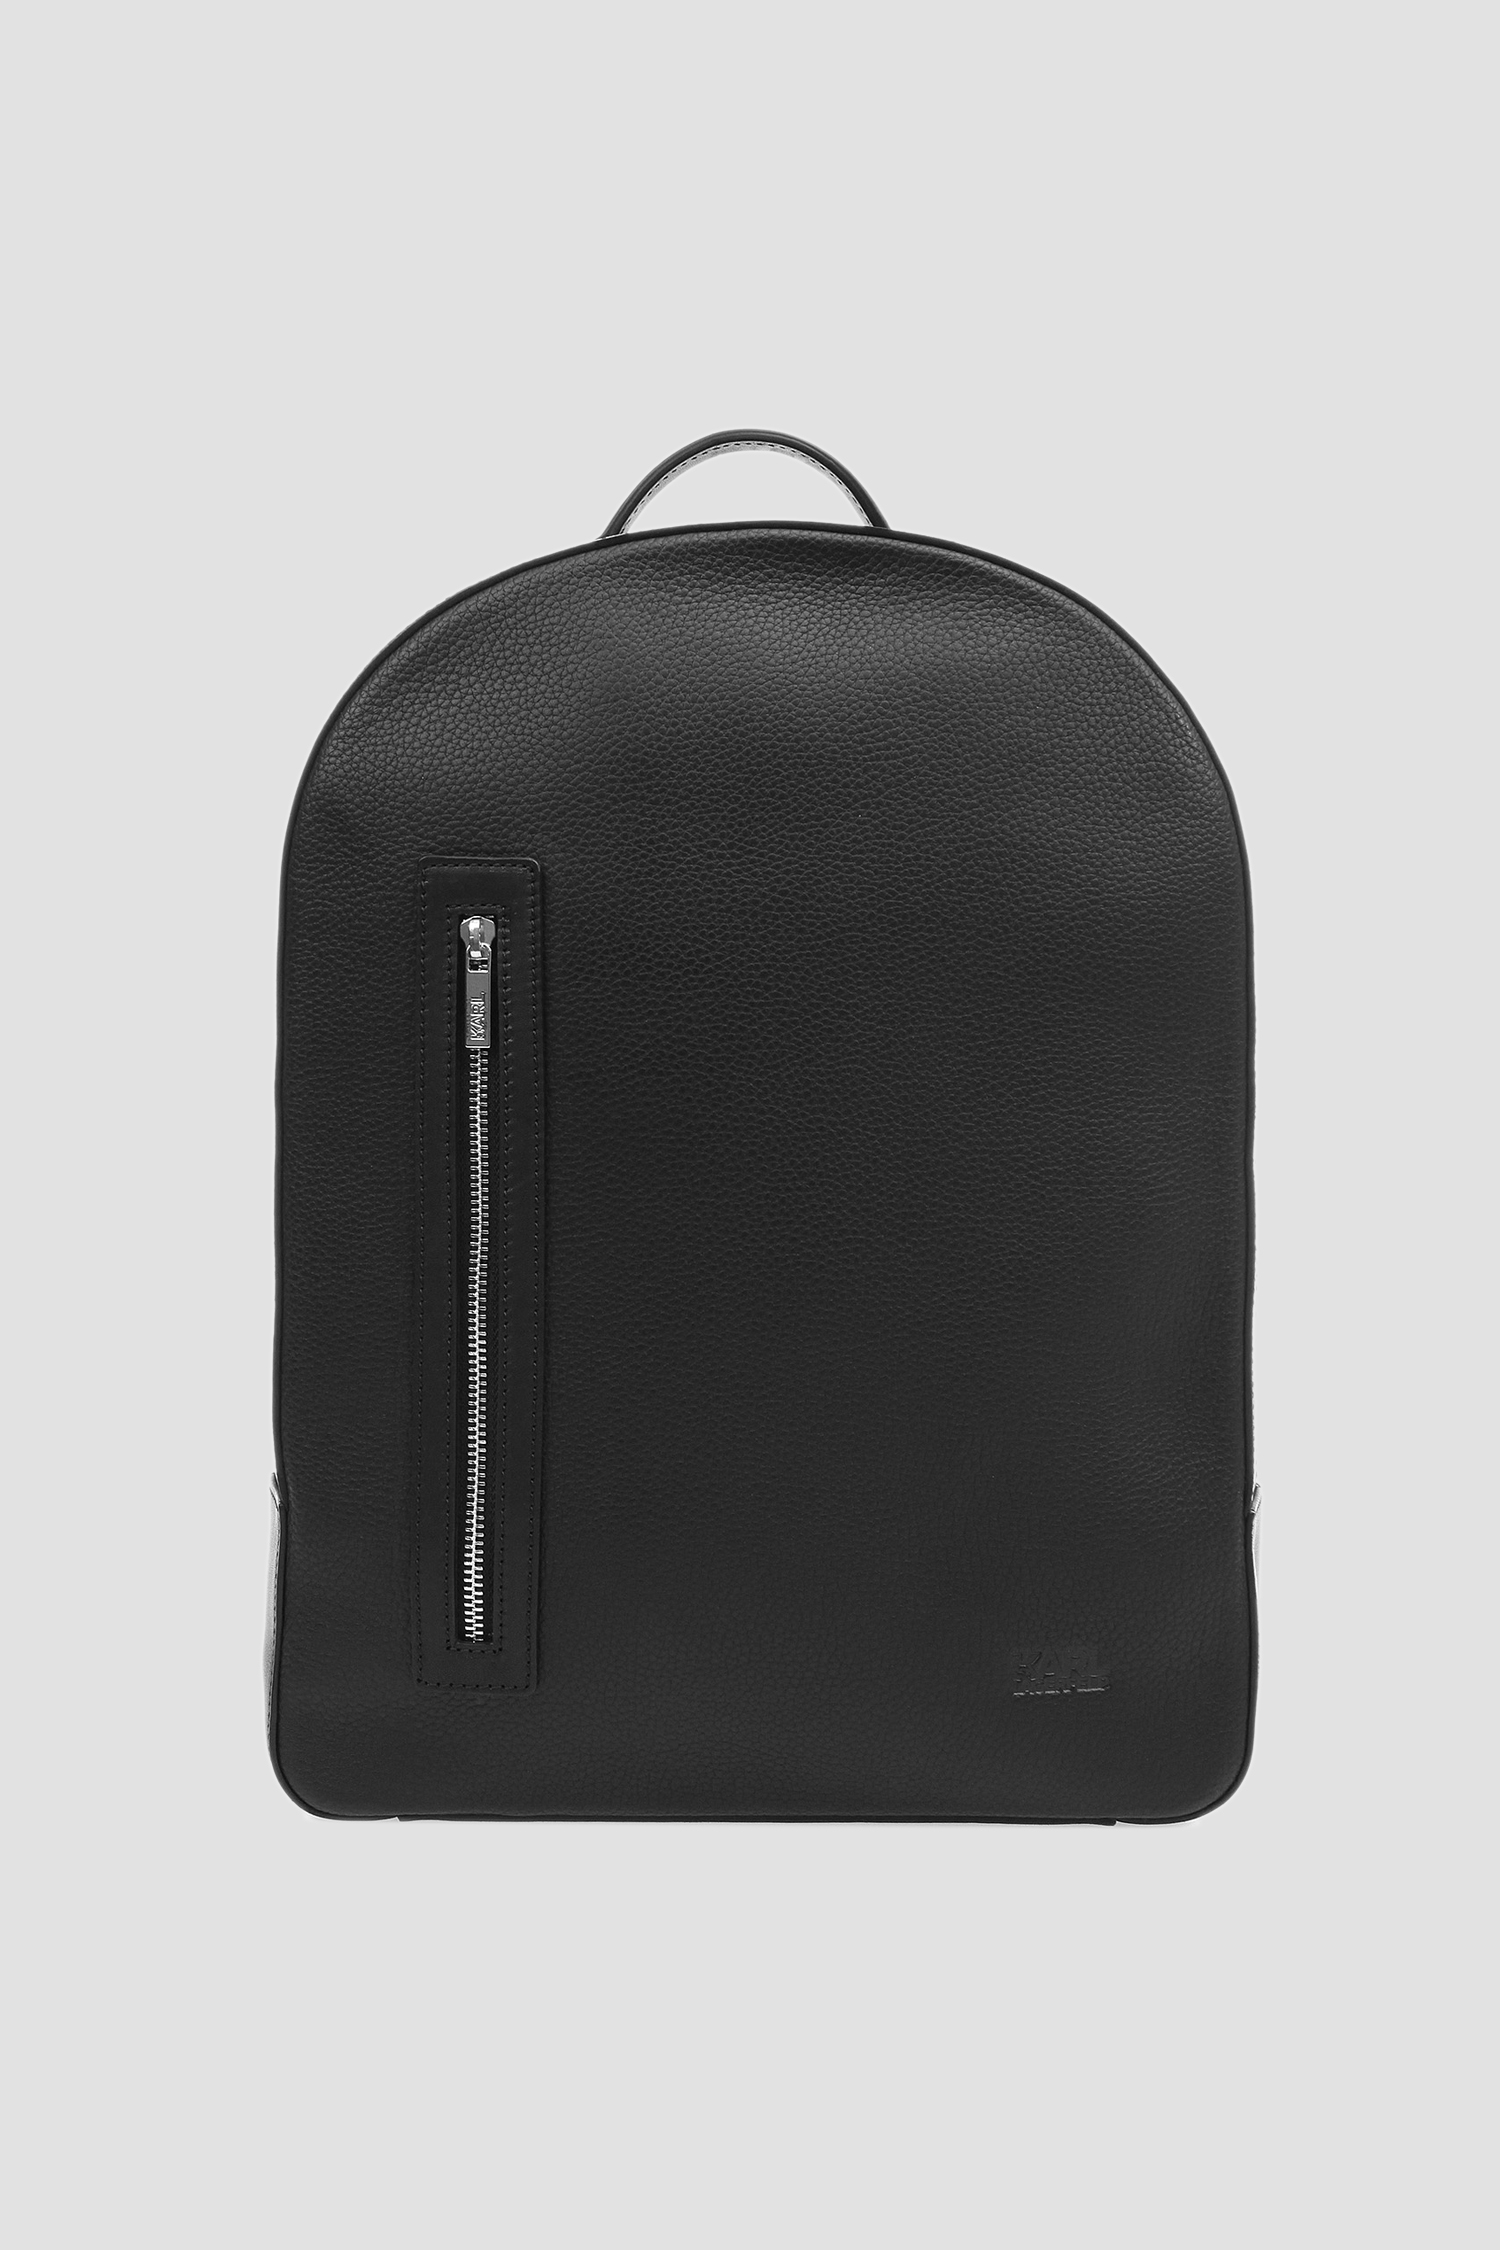 Мужской черный кожаный рюкзак Karl Lagerfeld 582451.815901;990